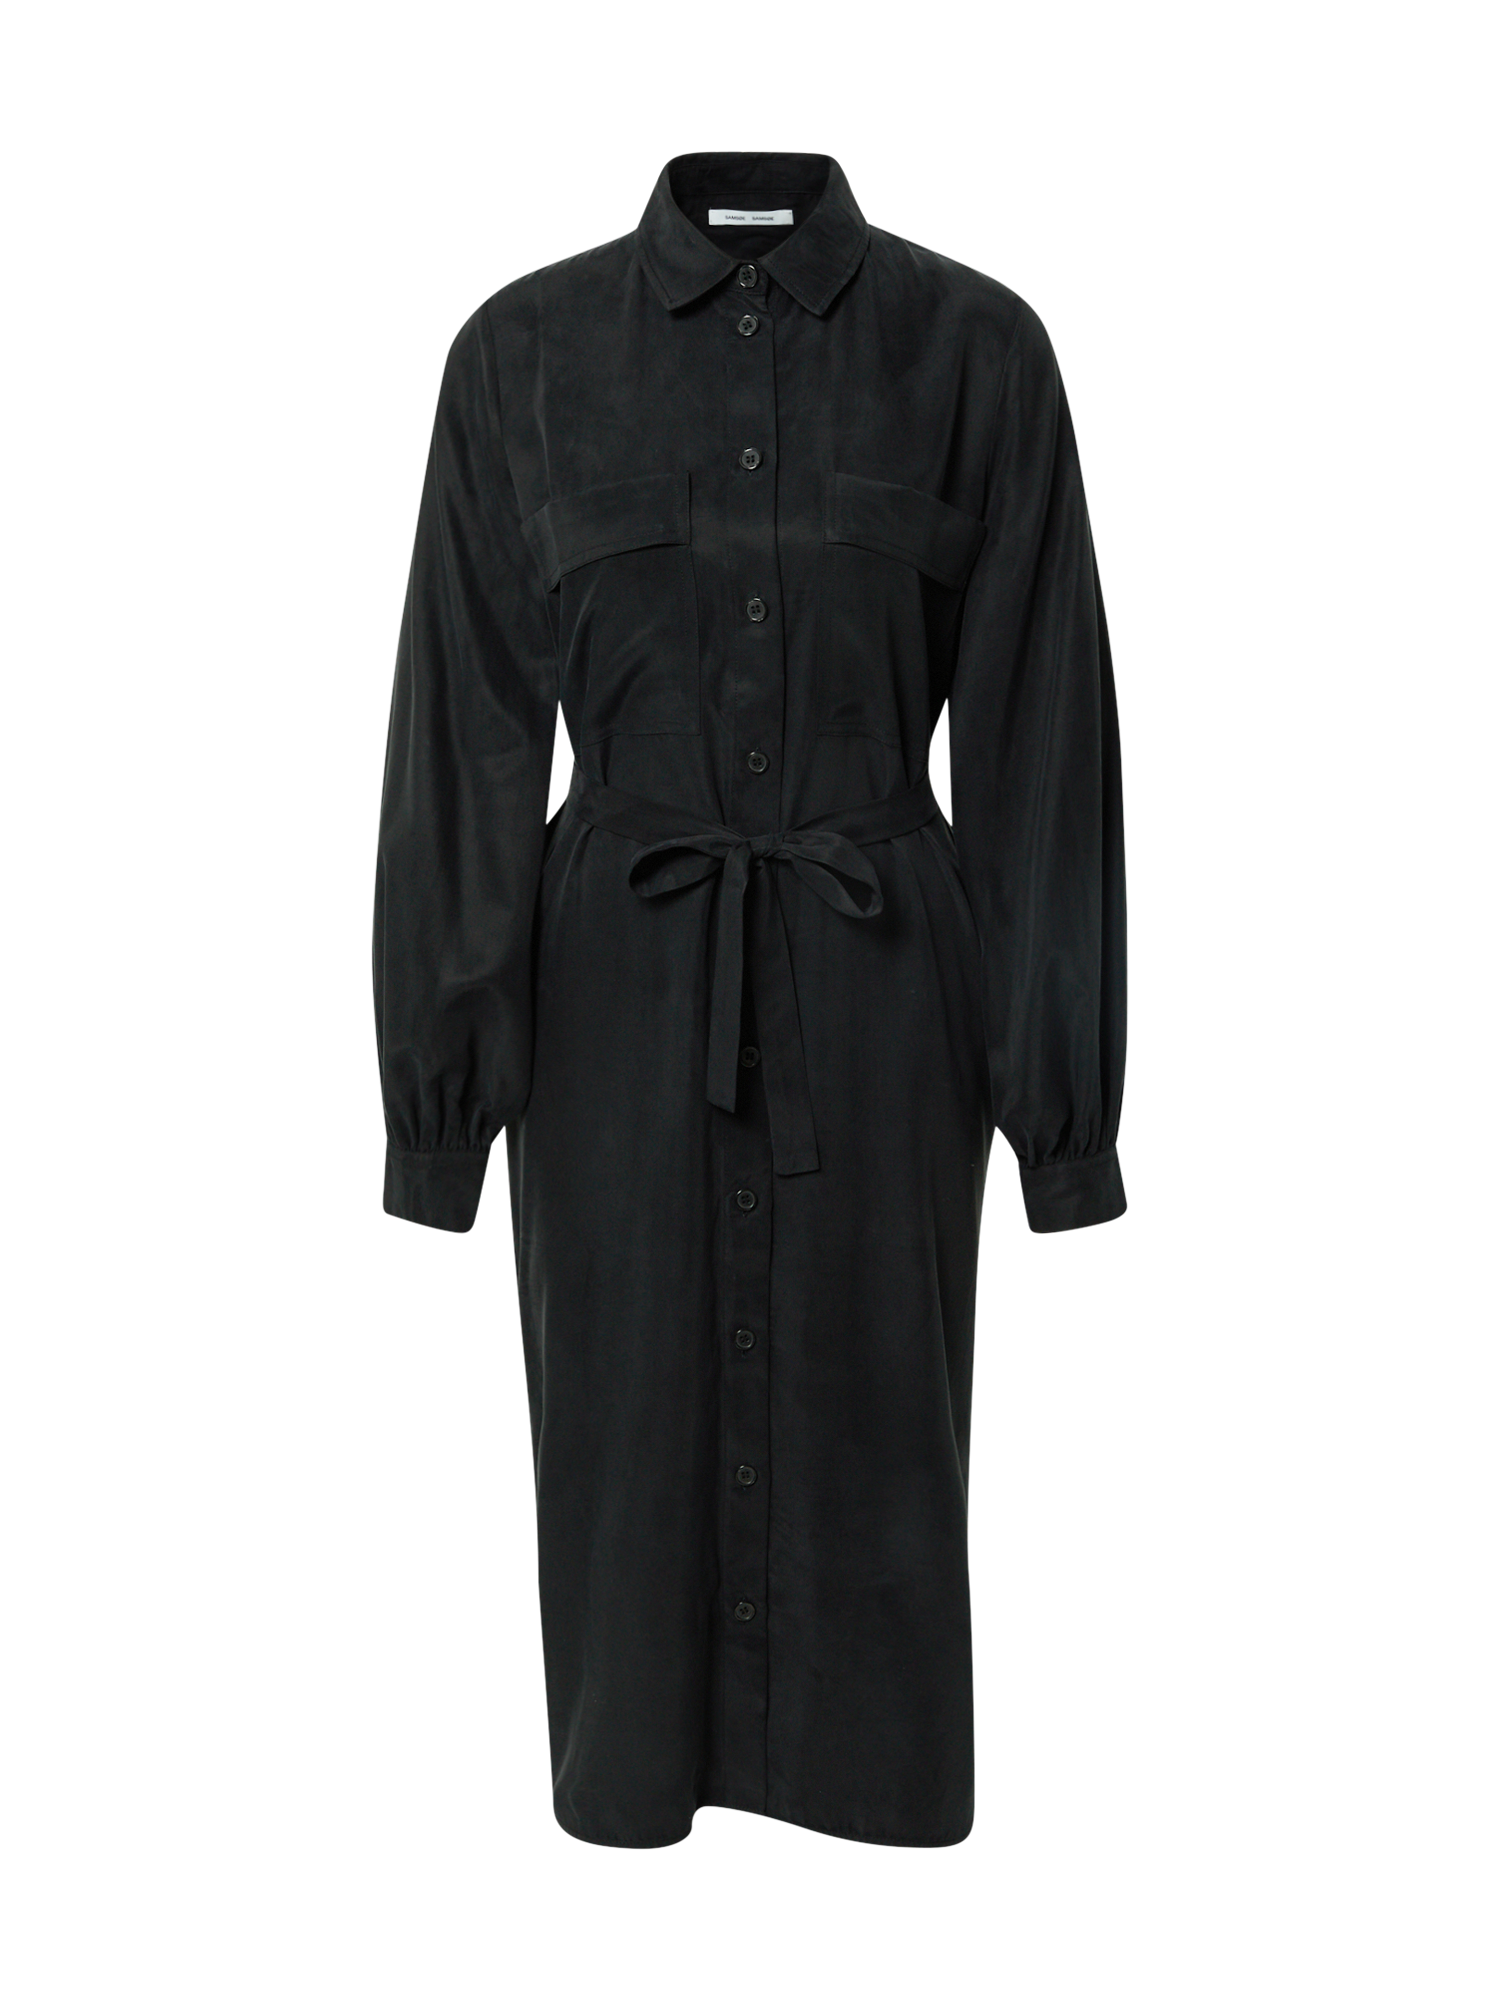 VnVDQ Odzież Samsoe Samsoe Sukienka koszulowa CAMILA w kolorze Czarnym 